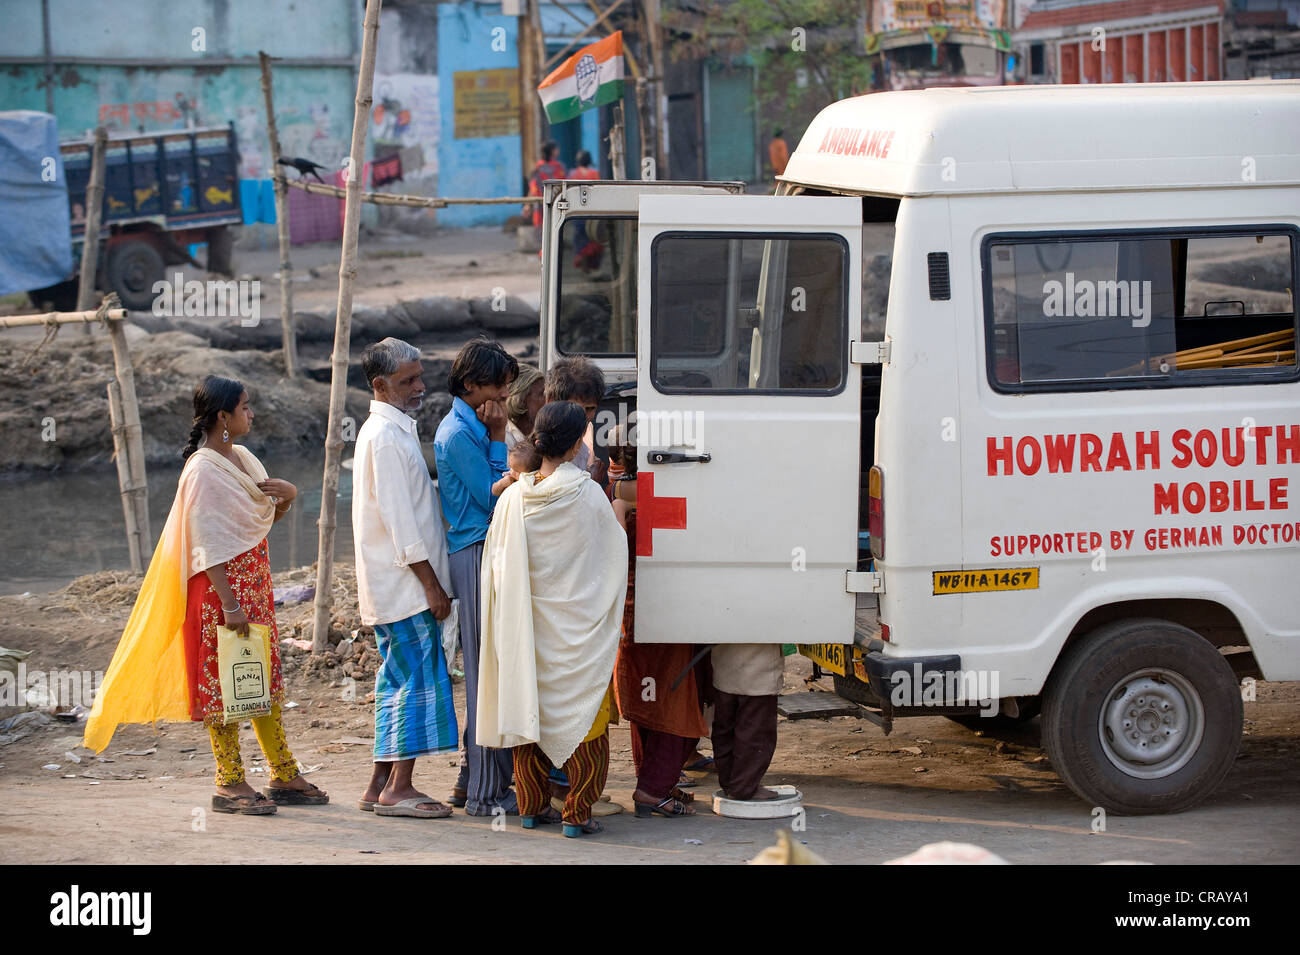 Ambulanz der Hilfsorganisation German Doctors für Entwicklungsländer, Shibpur Stadtteil Howrah, Indien, Asien Stockfoto